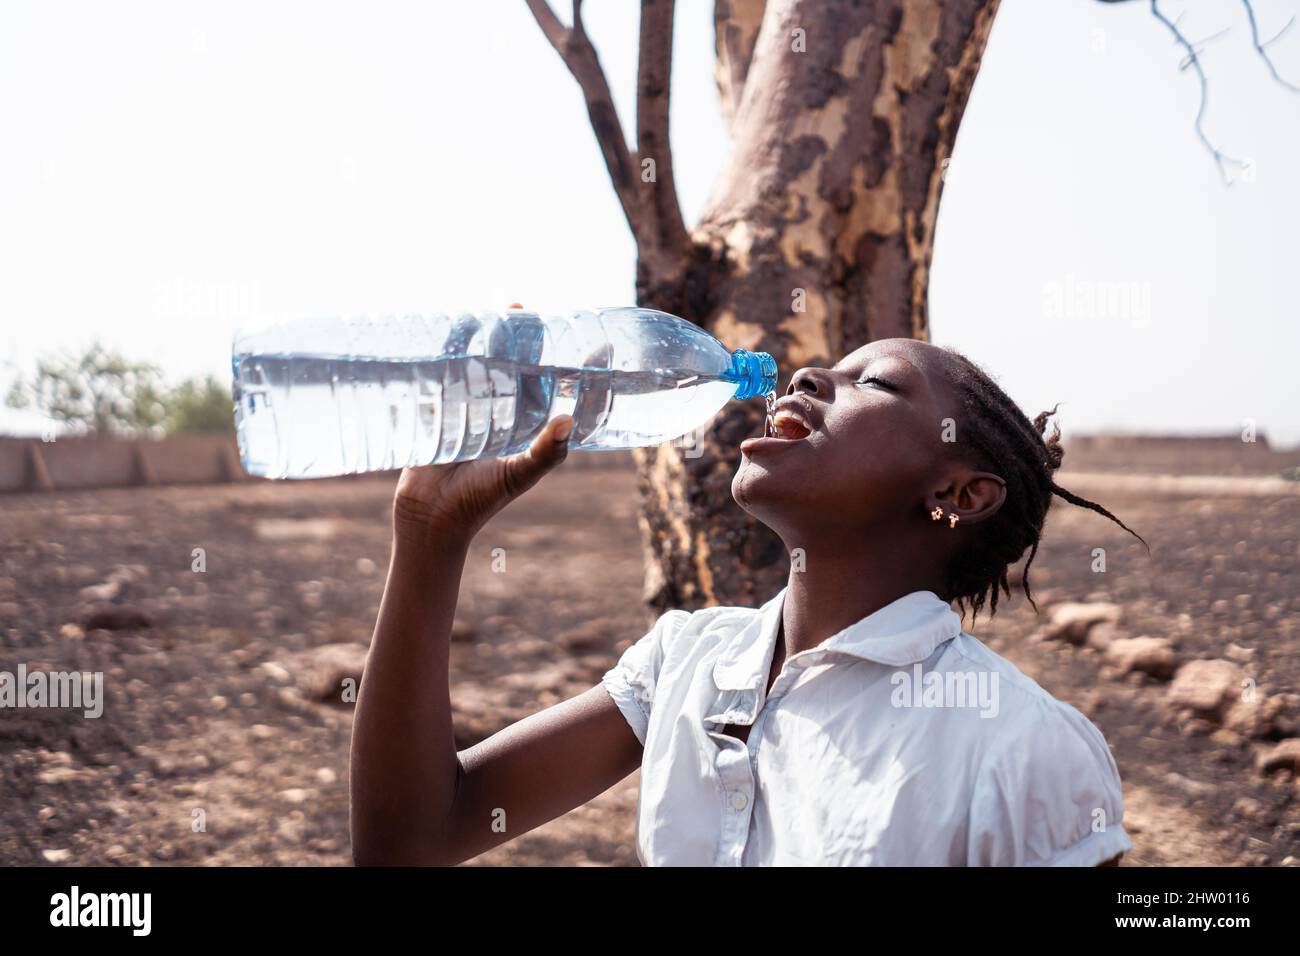 Durstiges junges schwarzes afrikanisches Mädchen, das unter einem verwelkten Baum in einer trockenen, trockenen Landschaft steht, trinkt mit Streit Wasser aus einer Plastikflasche; Wassershorta Stockfoto